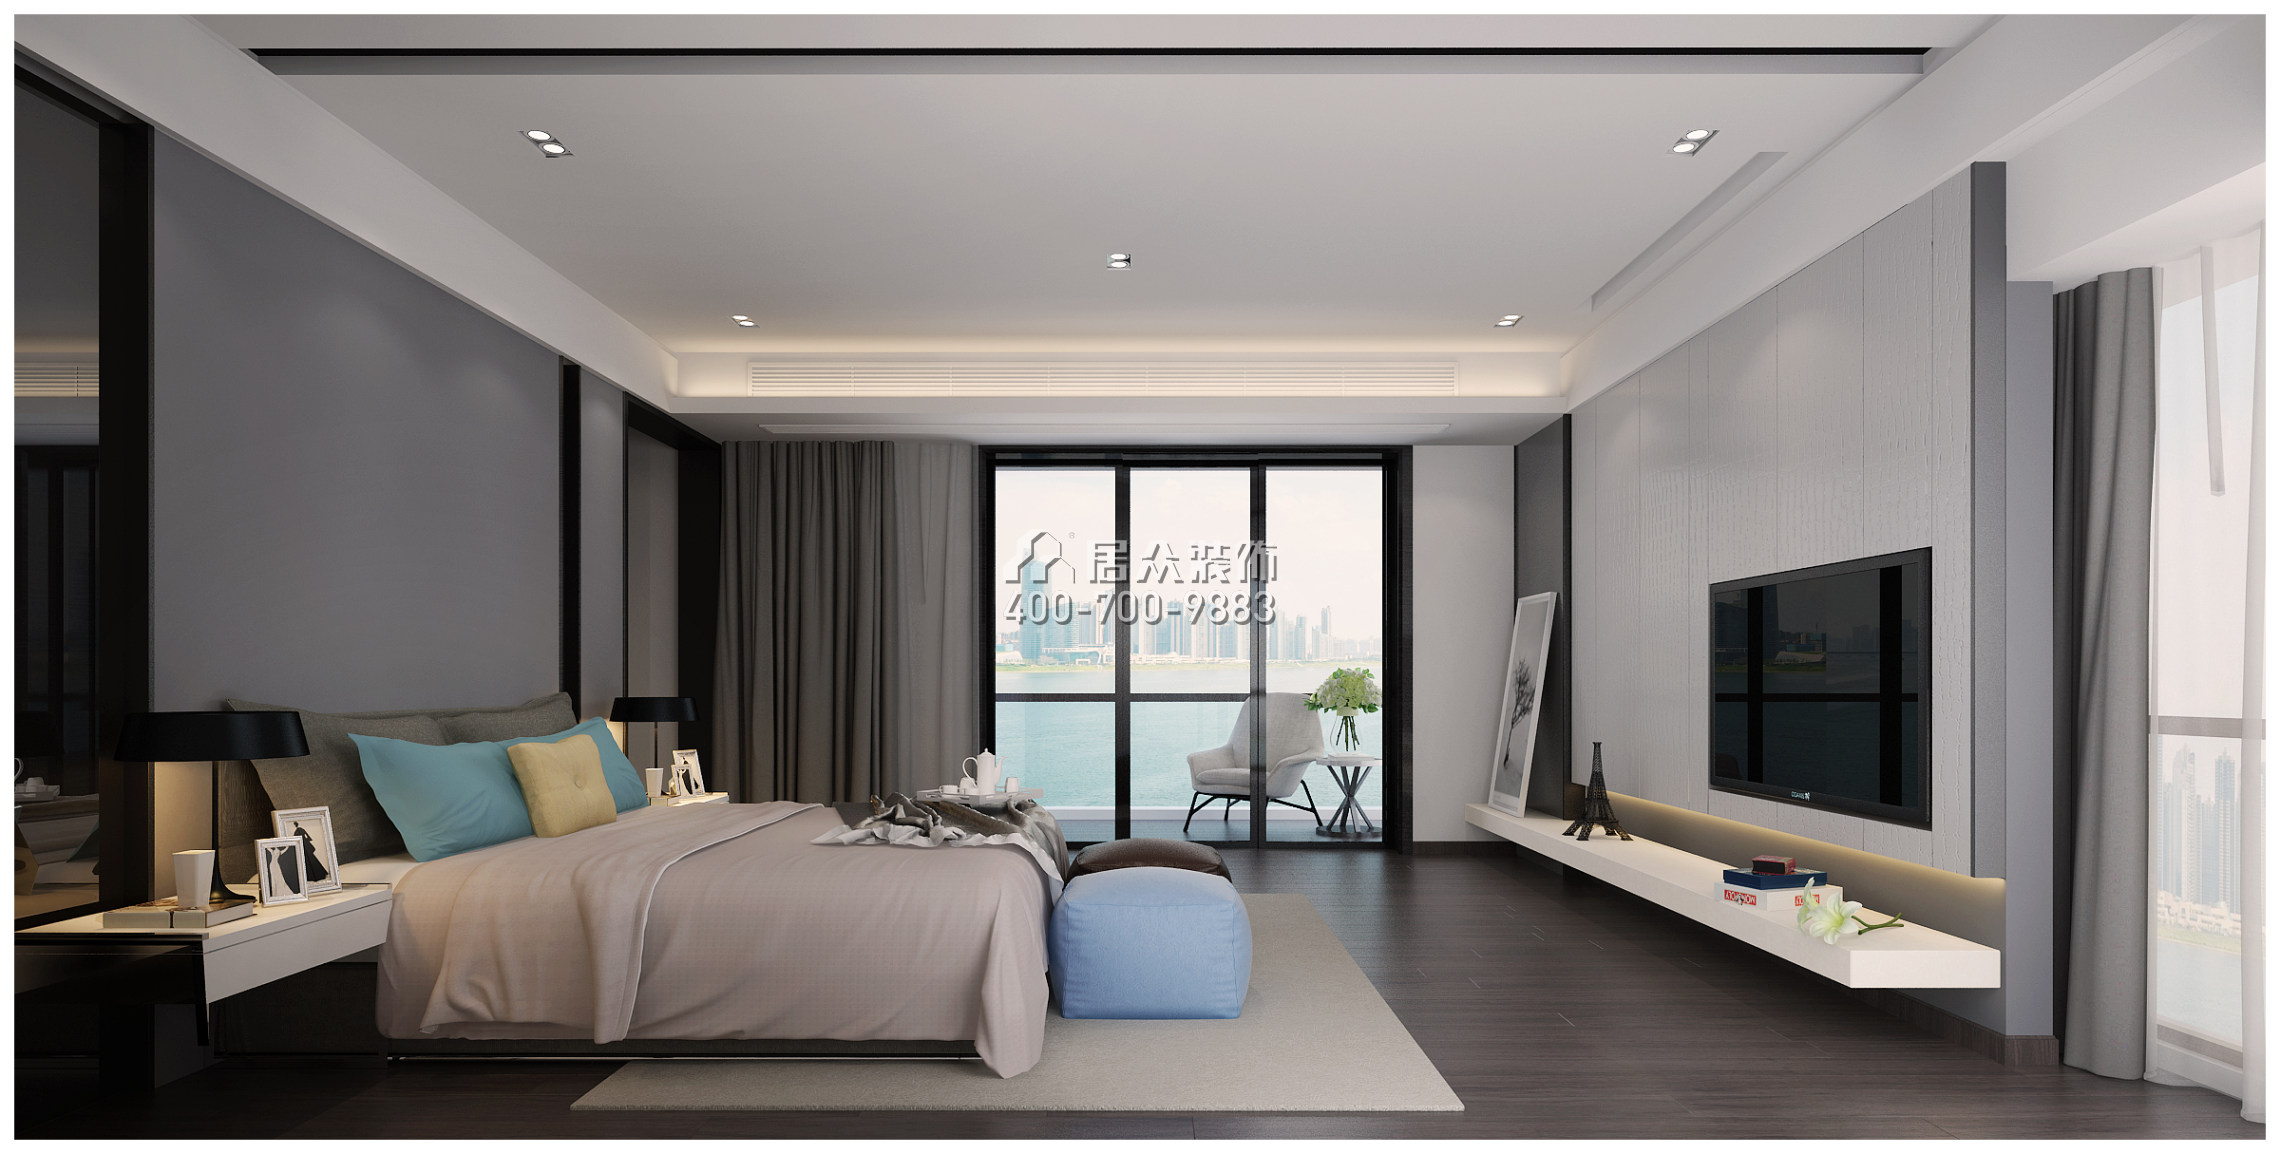 北辰定江洋285平方米現代簡約風格平層戶型臥室裝修效果圖